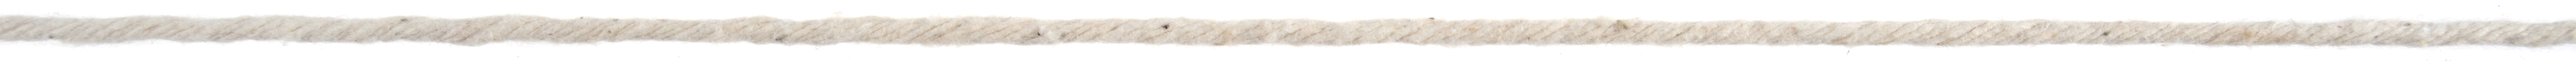 Picture of Trim: Macramé Cord: Cotton: 262m x 3mm: 0.5kg: Natural